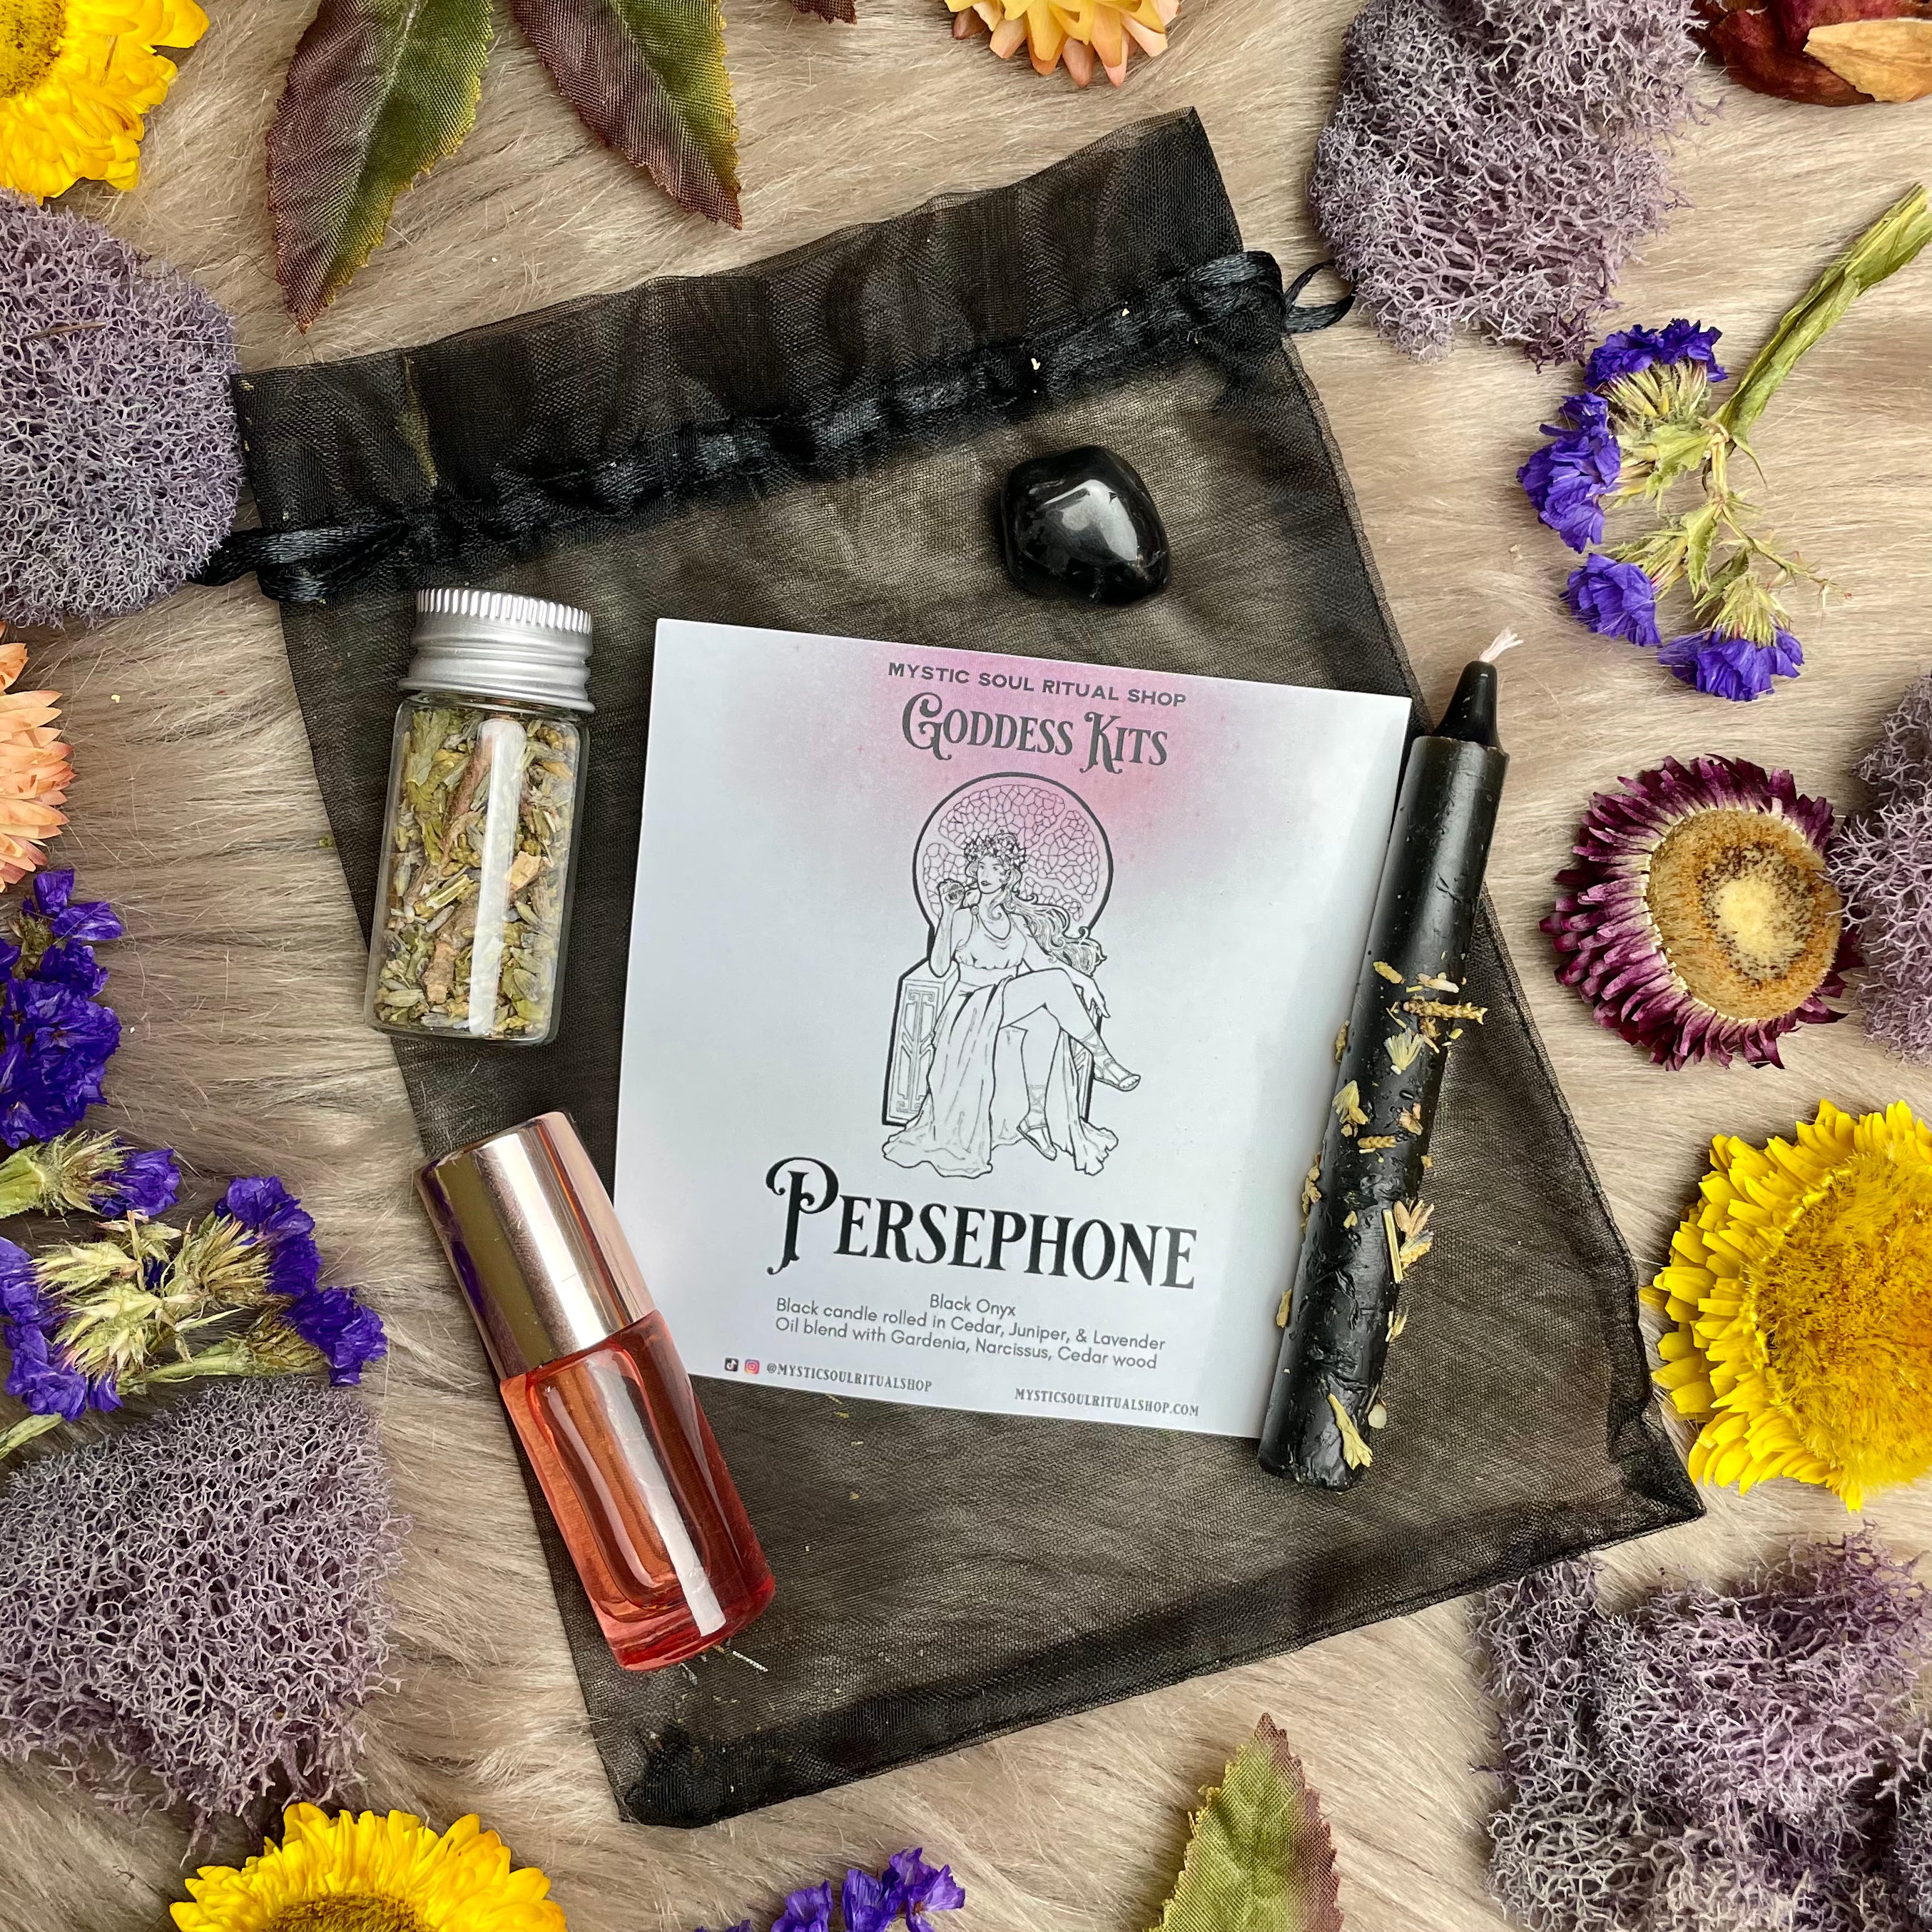 Persephone Goddess Kit